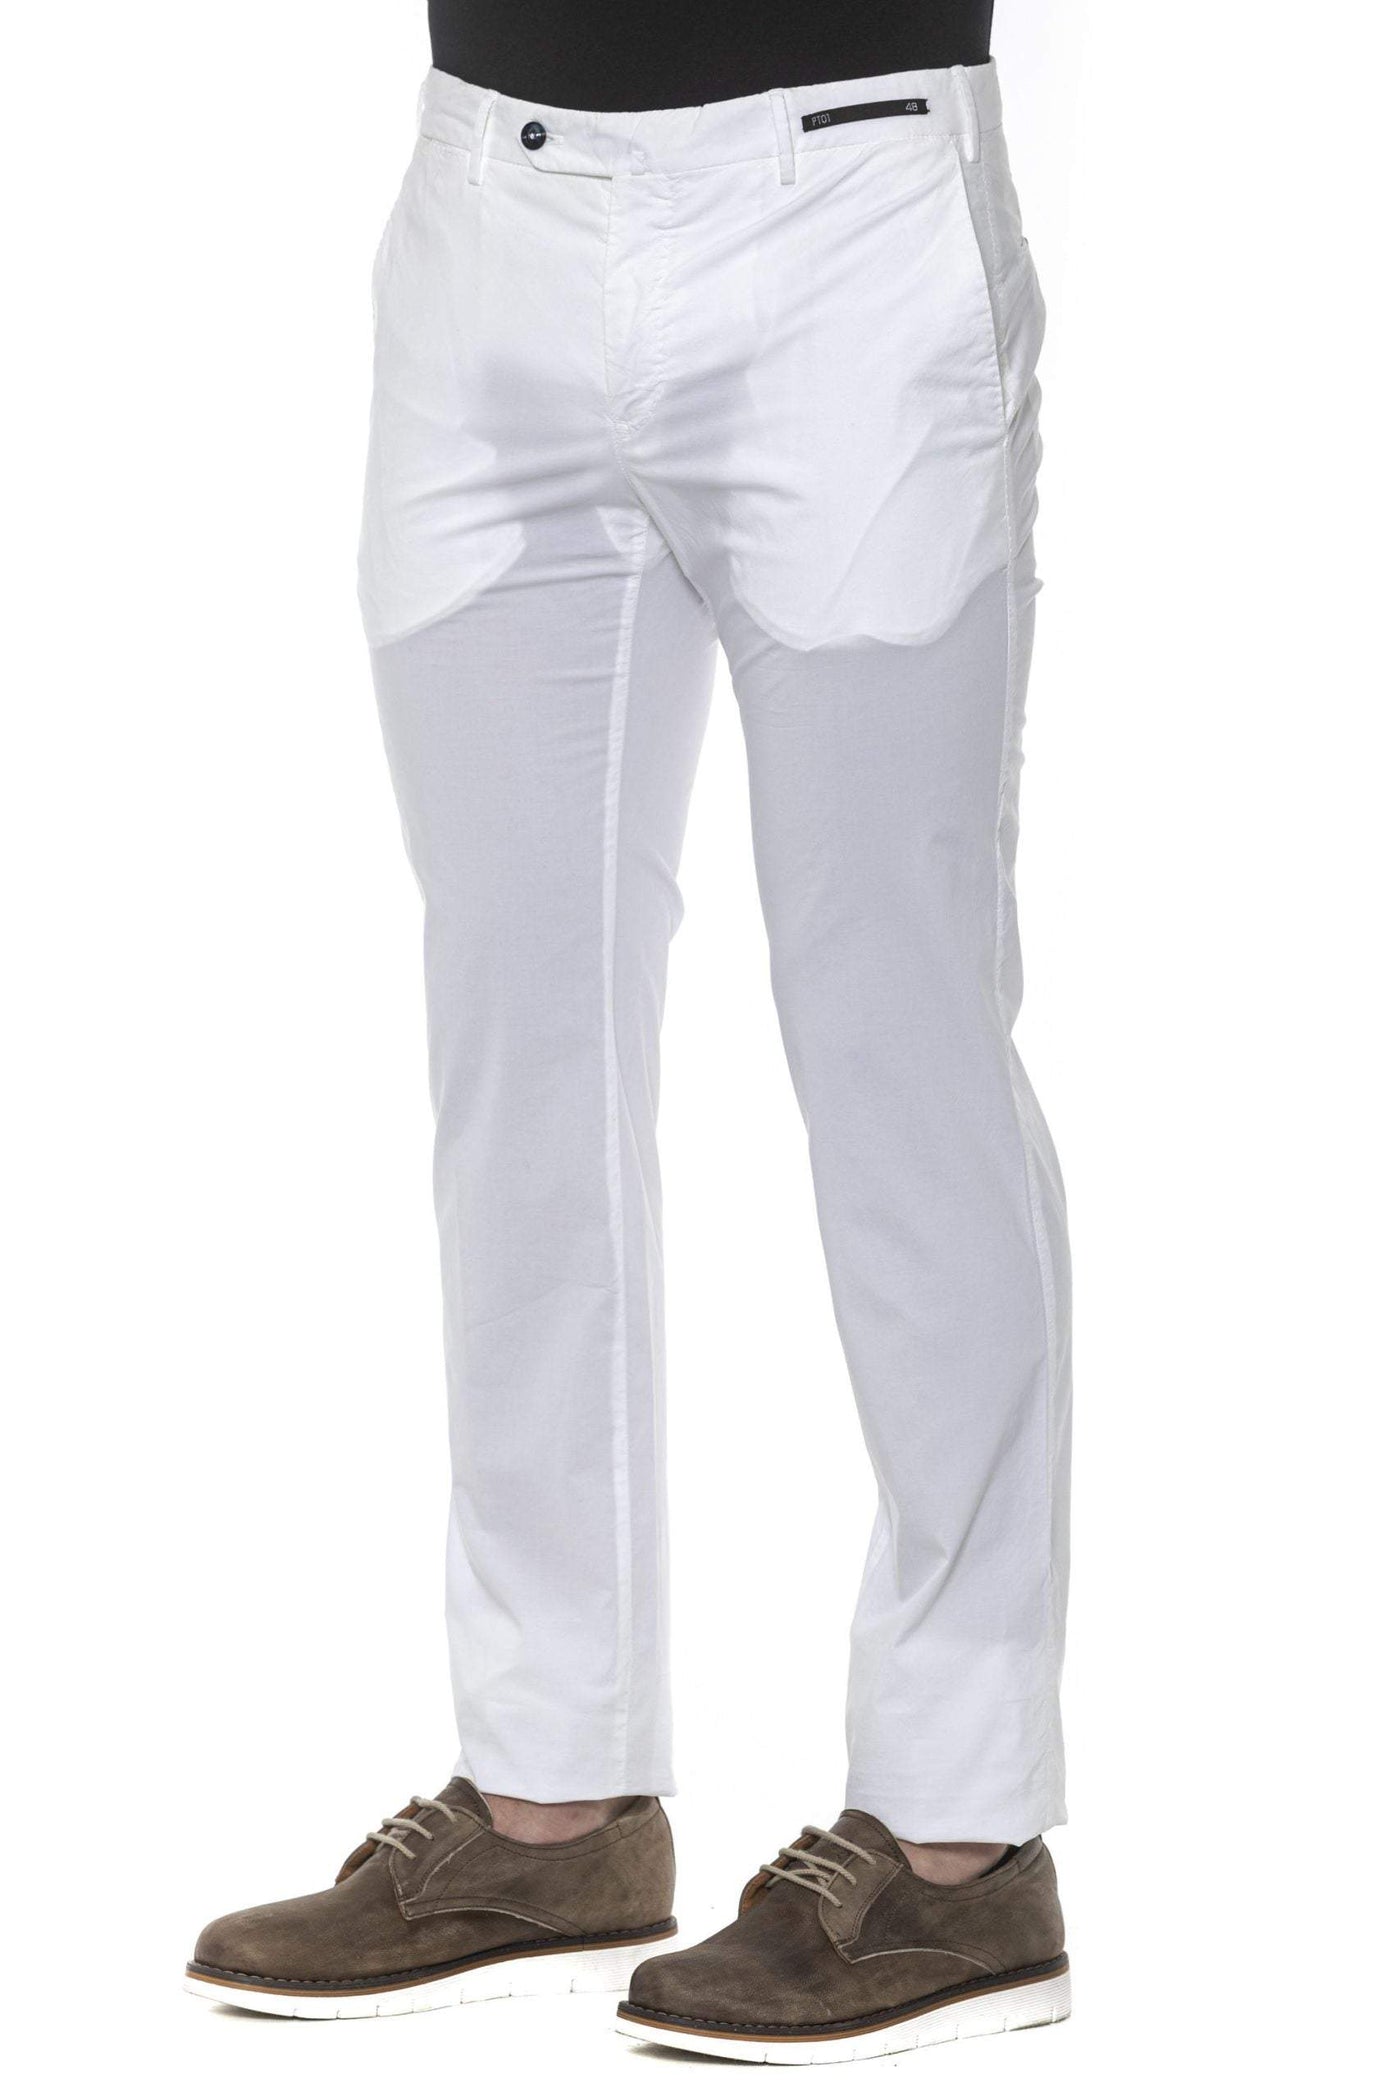 PT Torino White Cotton Jeans & Pant #men, feed-1, IT54 | XL, IT56 | XXL, Jeans & Pants - Men - Clothing, PT Torino, White at SEYMAYKA